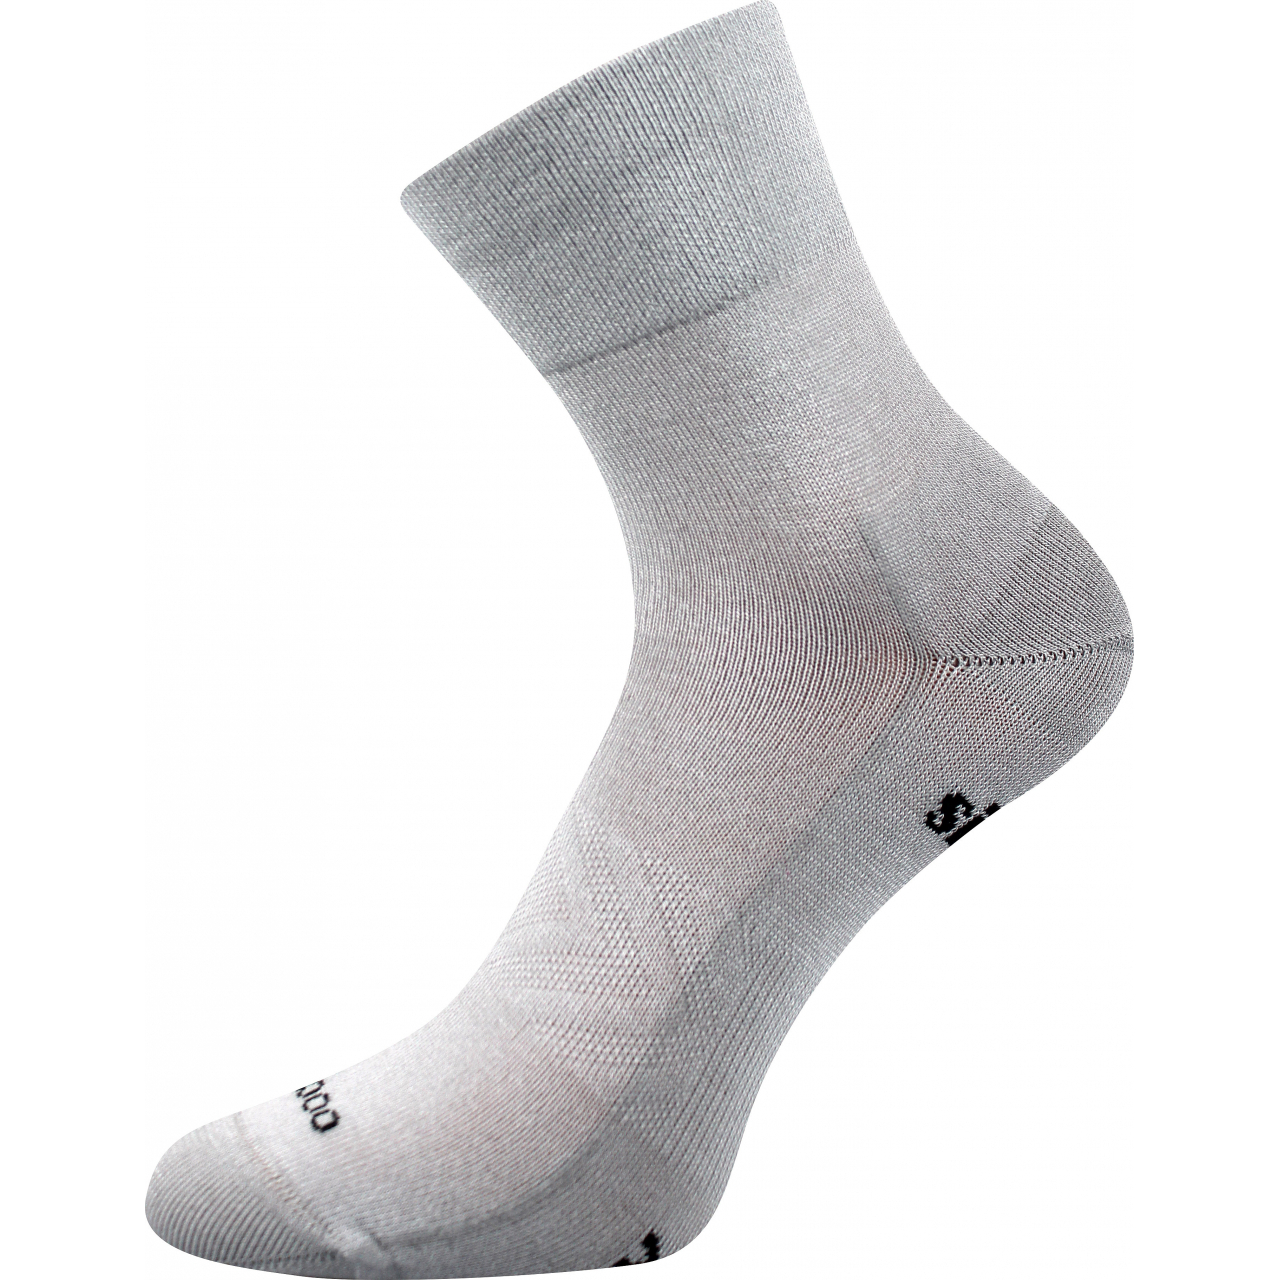 Ponožky sportovní unisex Voxx Baeron - světle šedé, 43-46